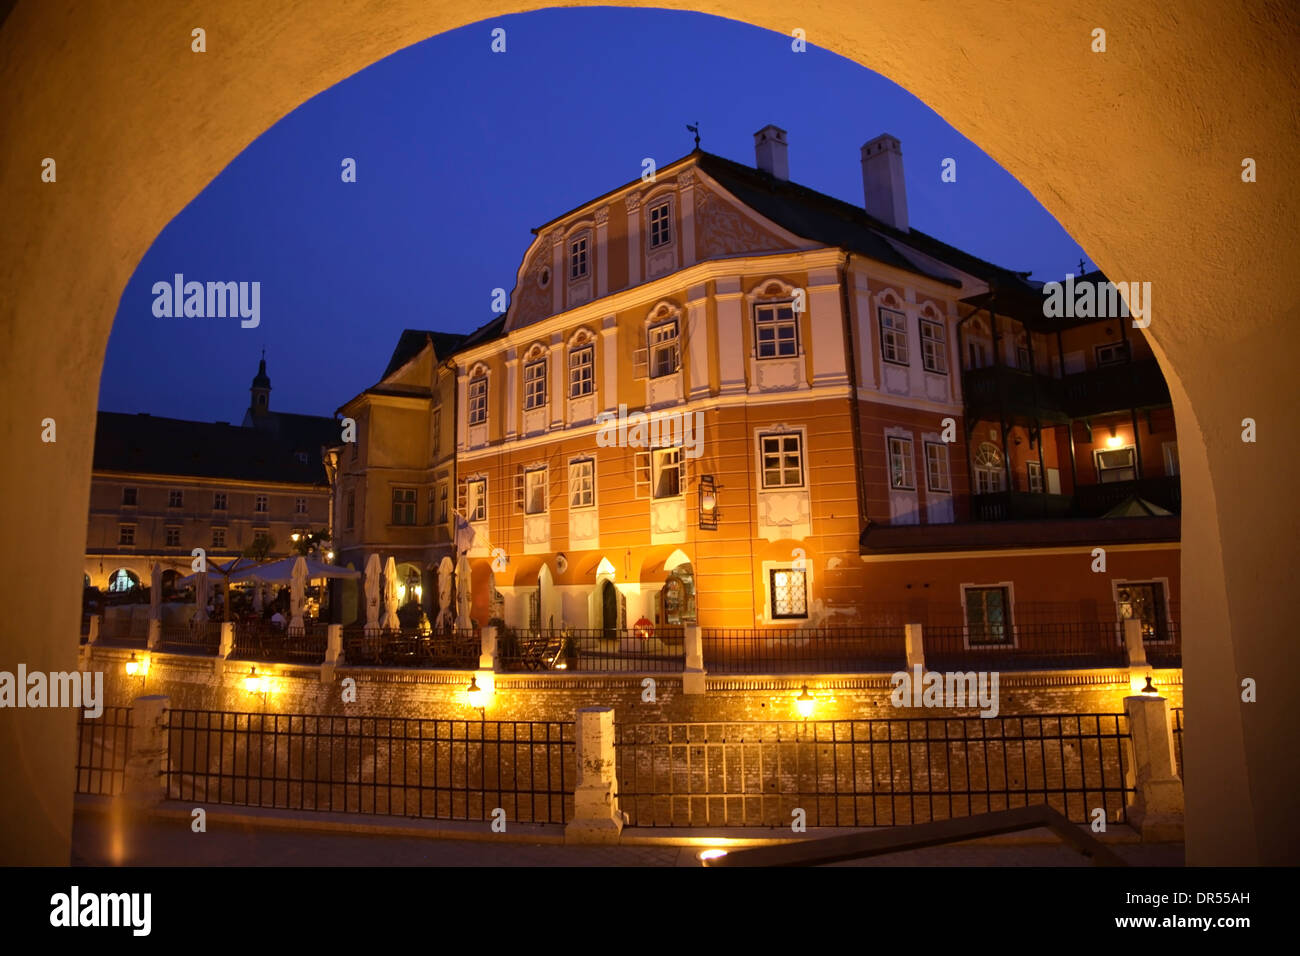 Luxembourg maison la nuit, Piata Mica, Sibiu (Hermannstadt), Transylvanie, Roumanie, Europe Banque D'Images